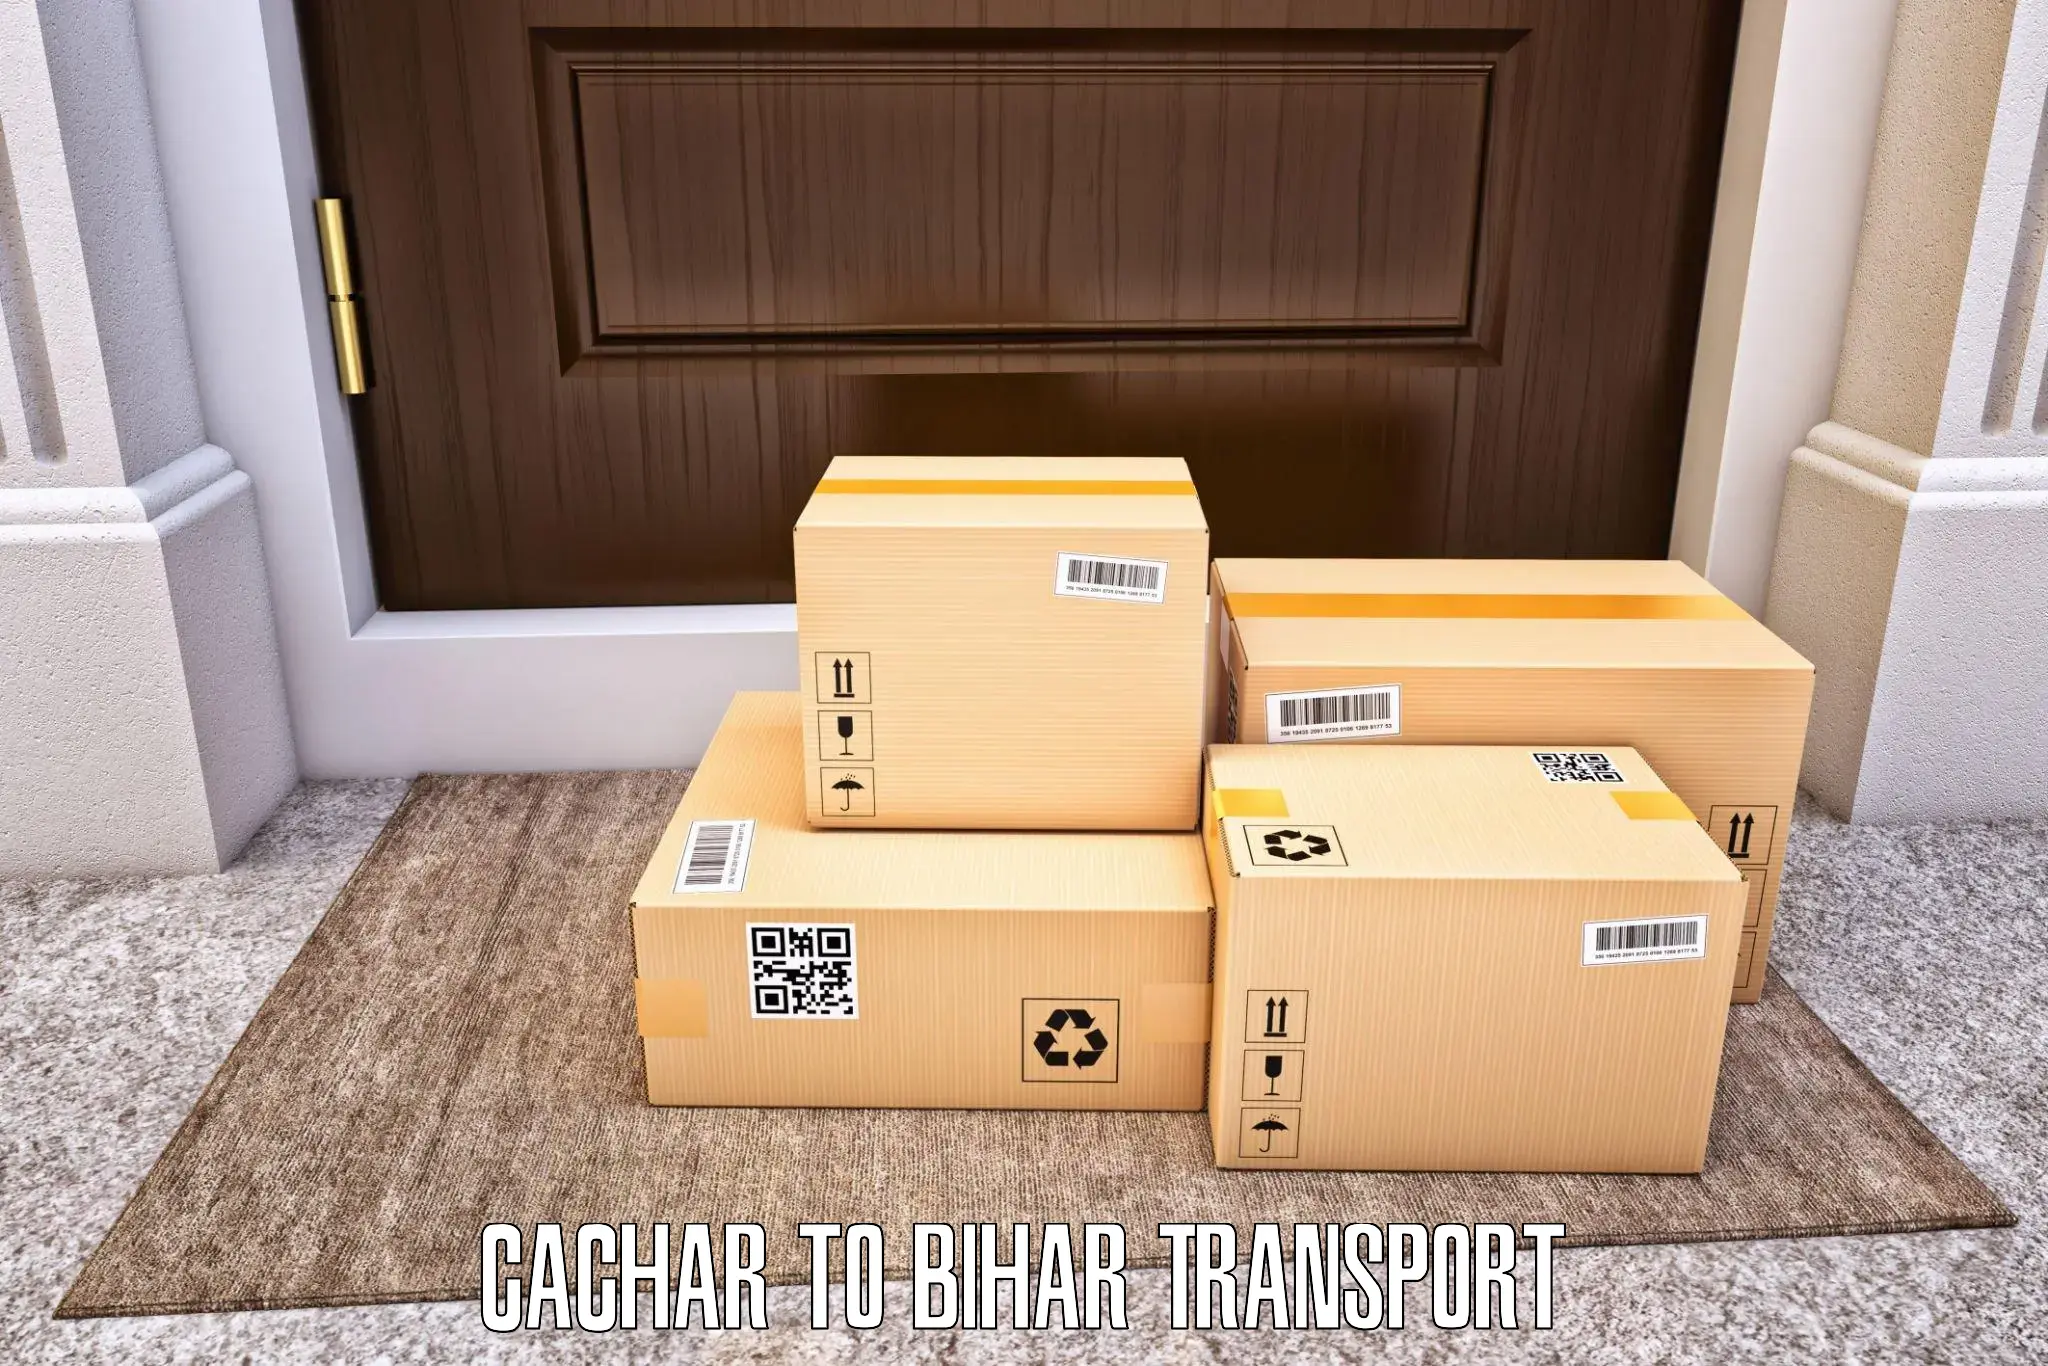 Interstate transport services Cachar to Jaynagar